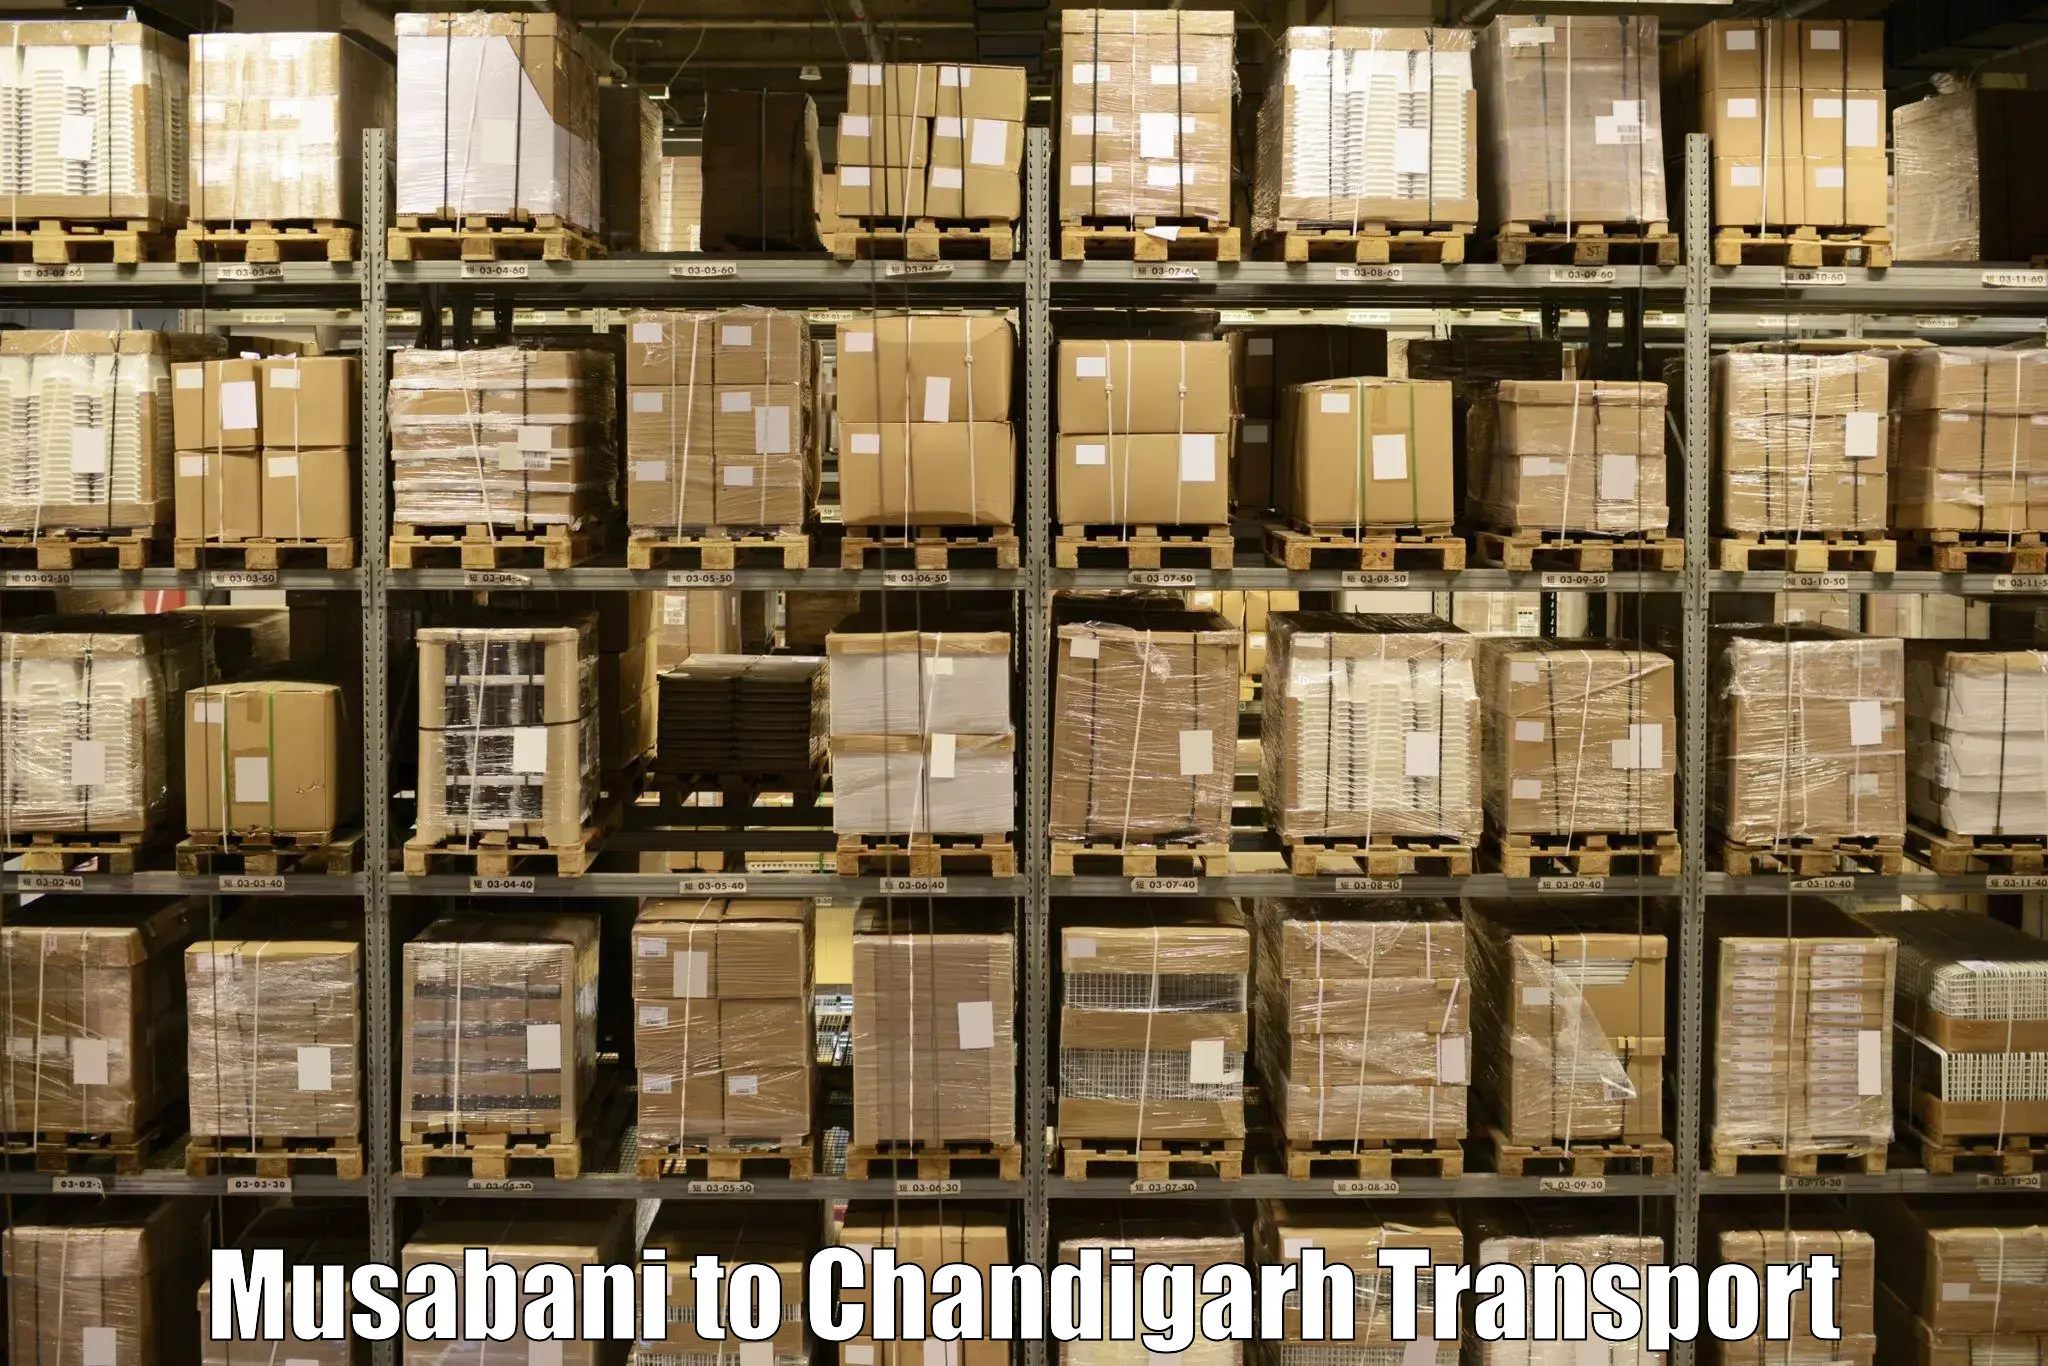 Pick up transport service Musabani to Chandigarh